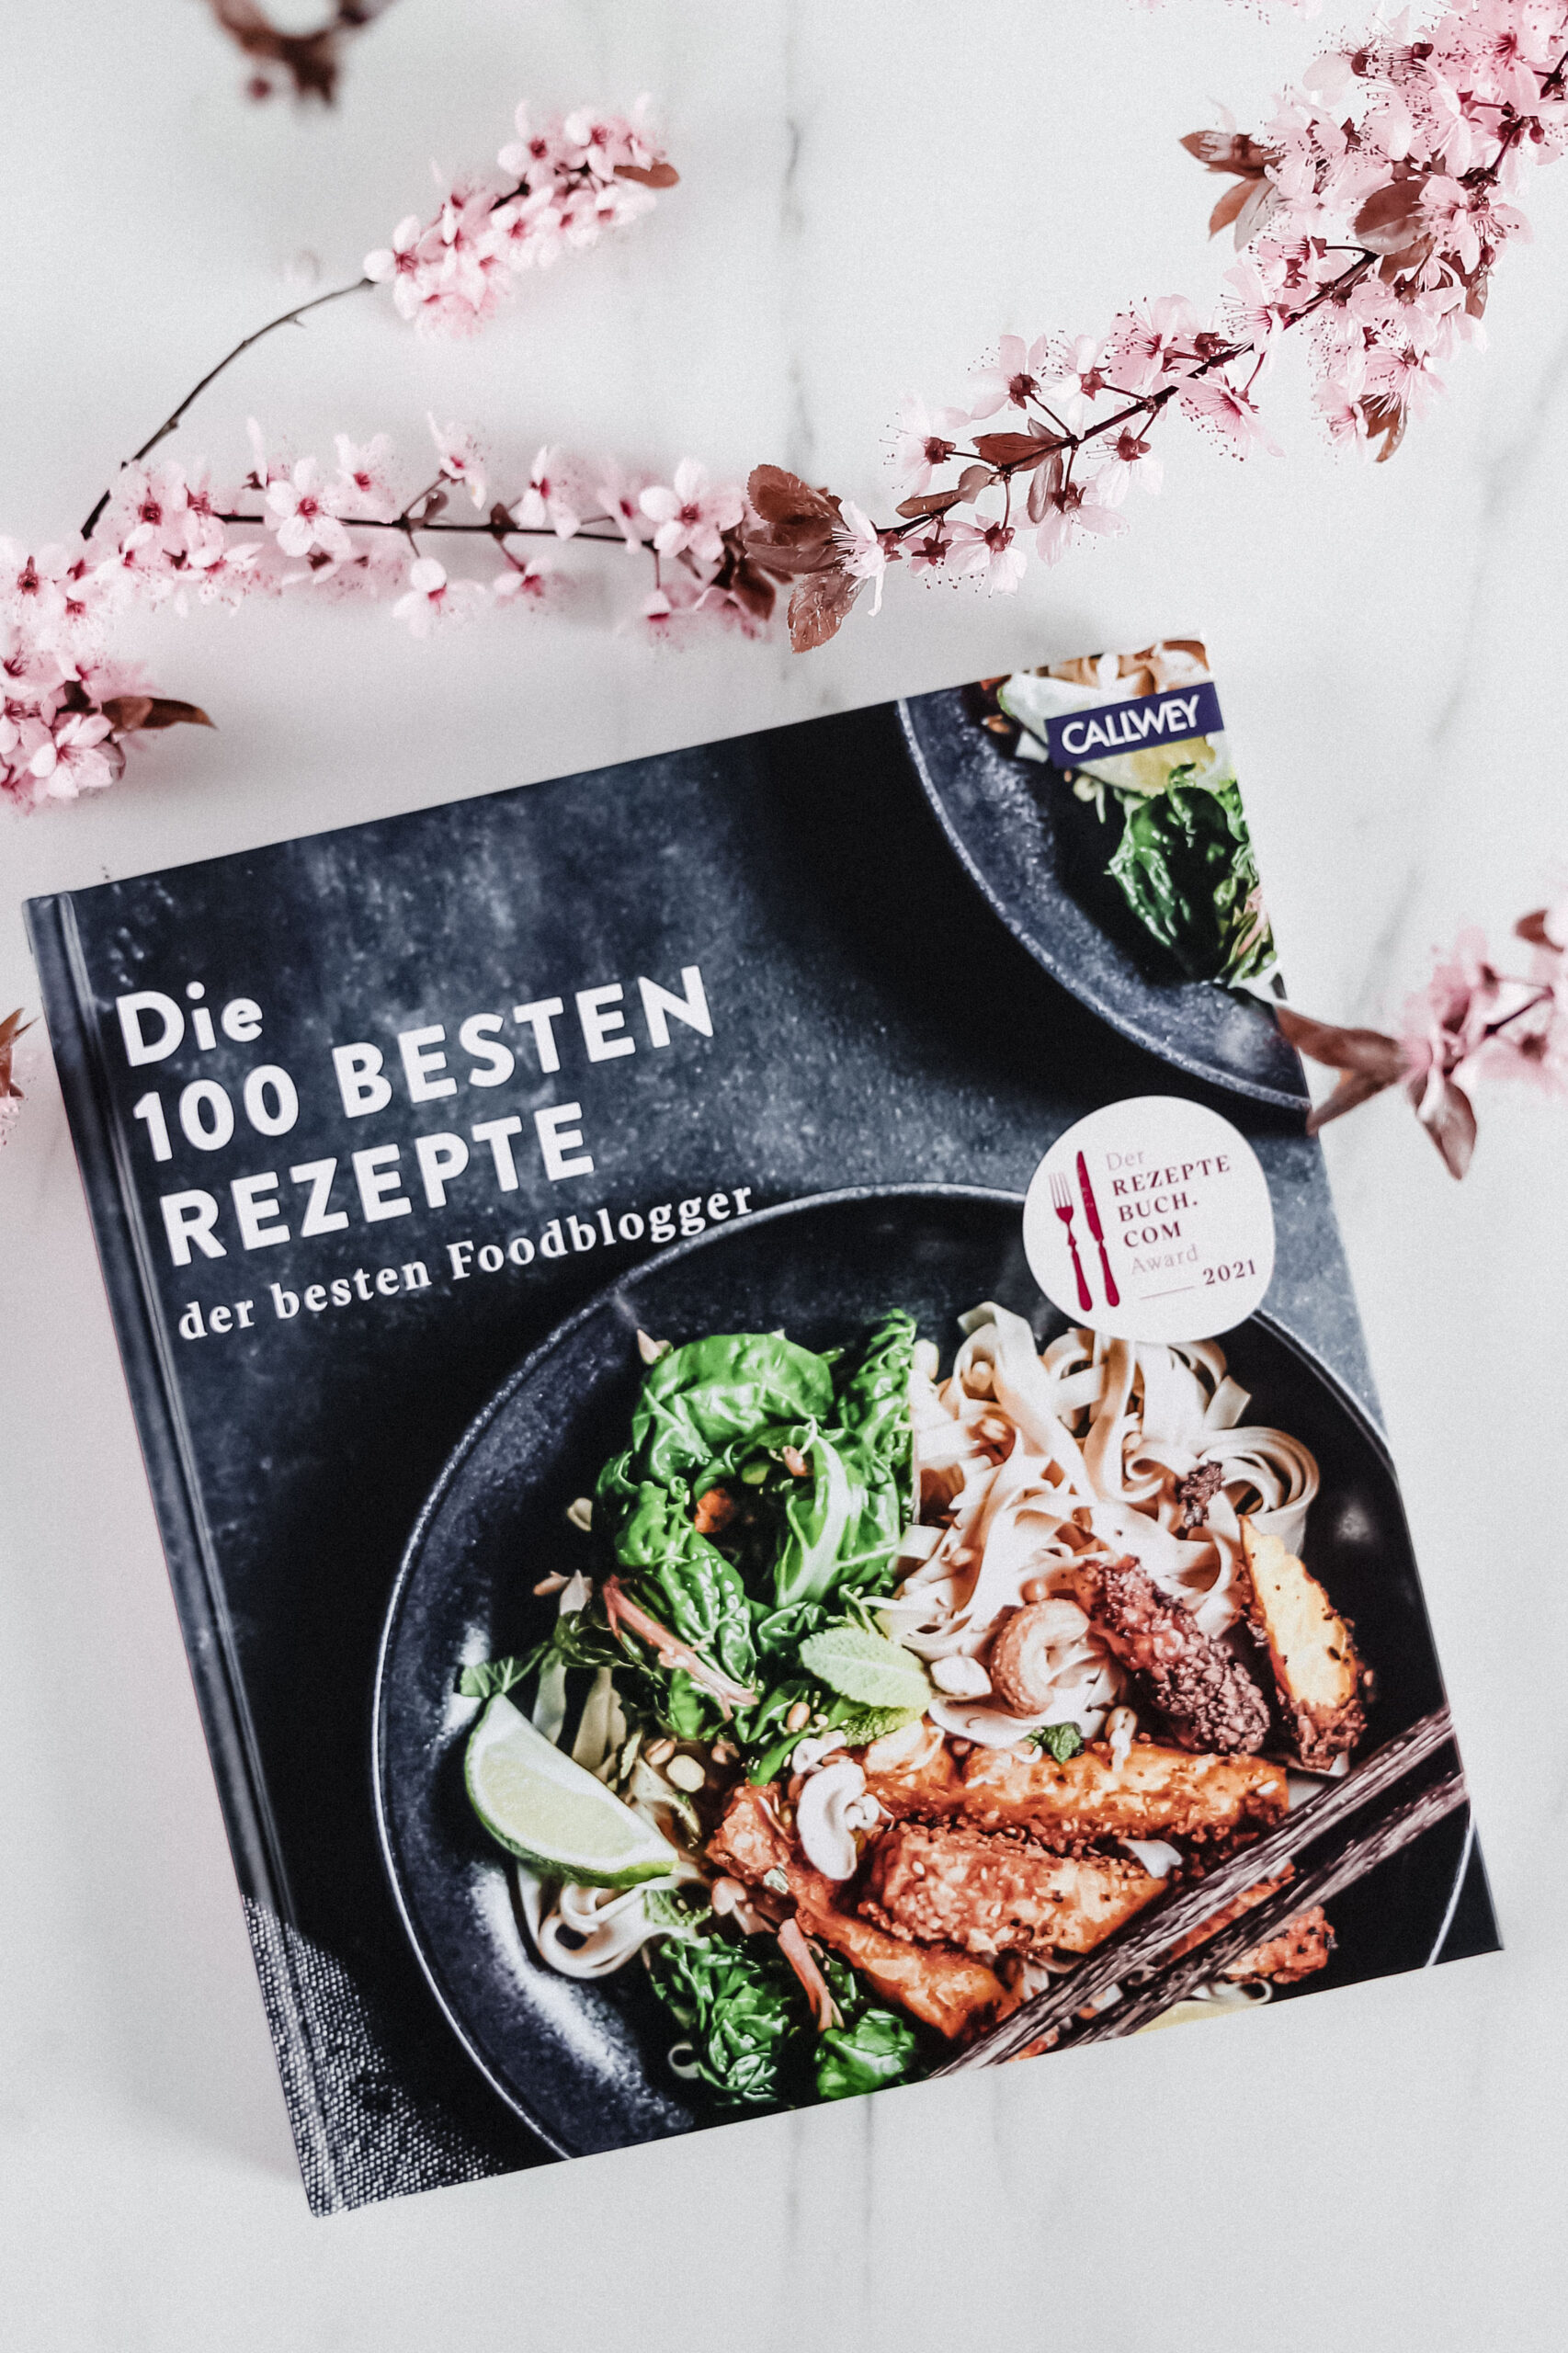 Rezeptbuch: Die 100 besten Rezepte der besten Foodblogger